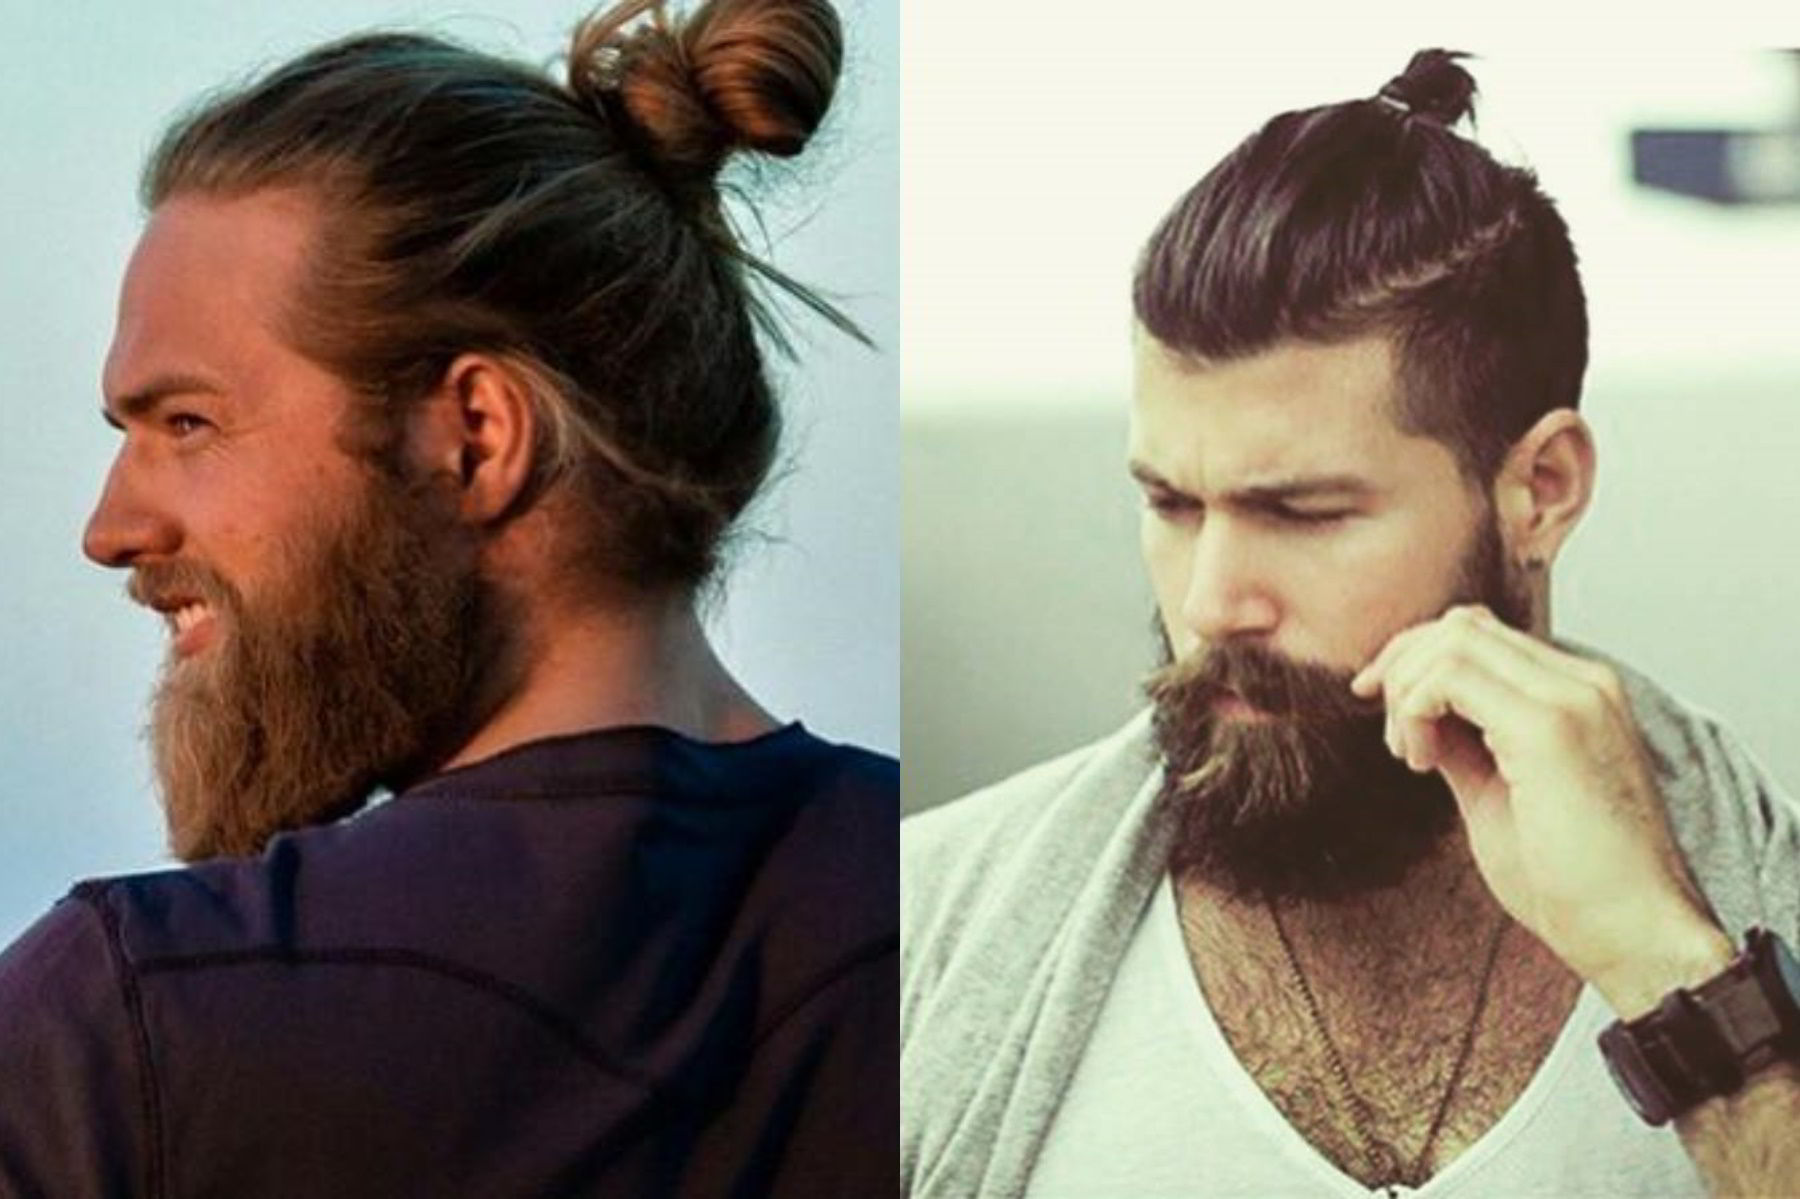 ТОП-16 мужских стрижек на длинные волосы (130+ фото): обзор самых модных стилей и видов для длинных волос, кому подойдет20